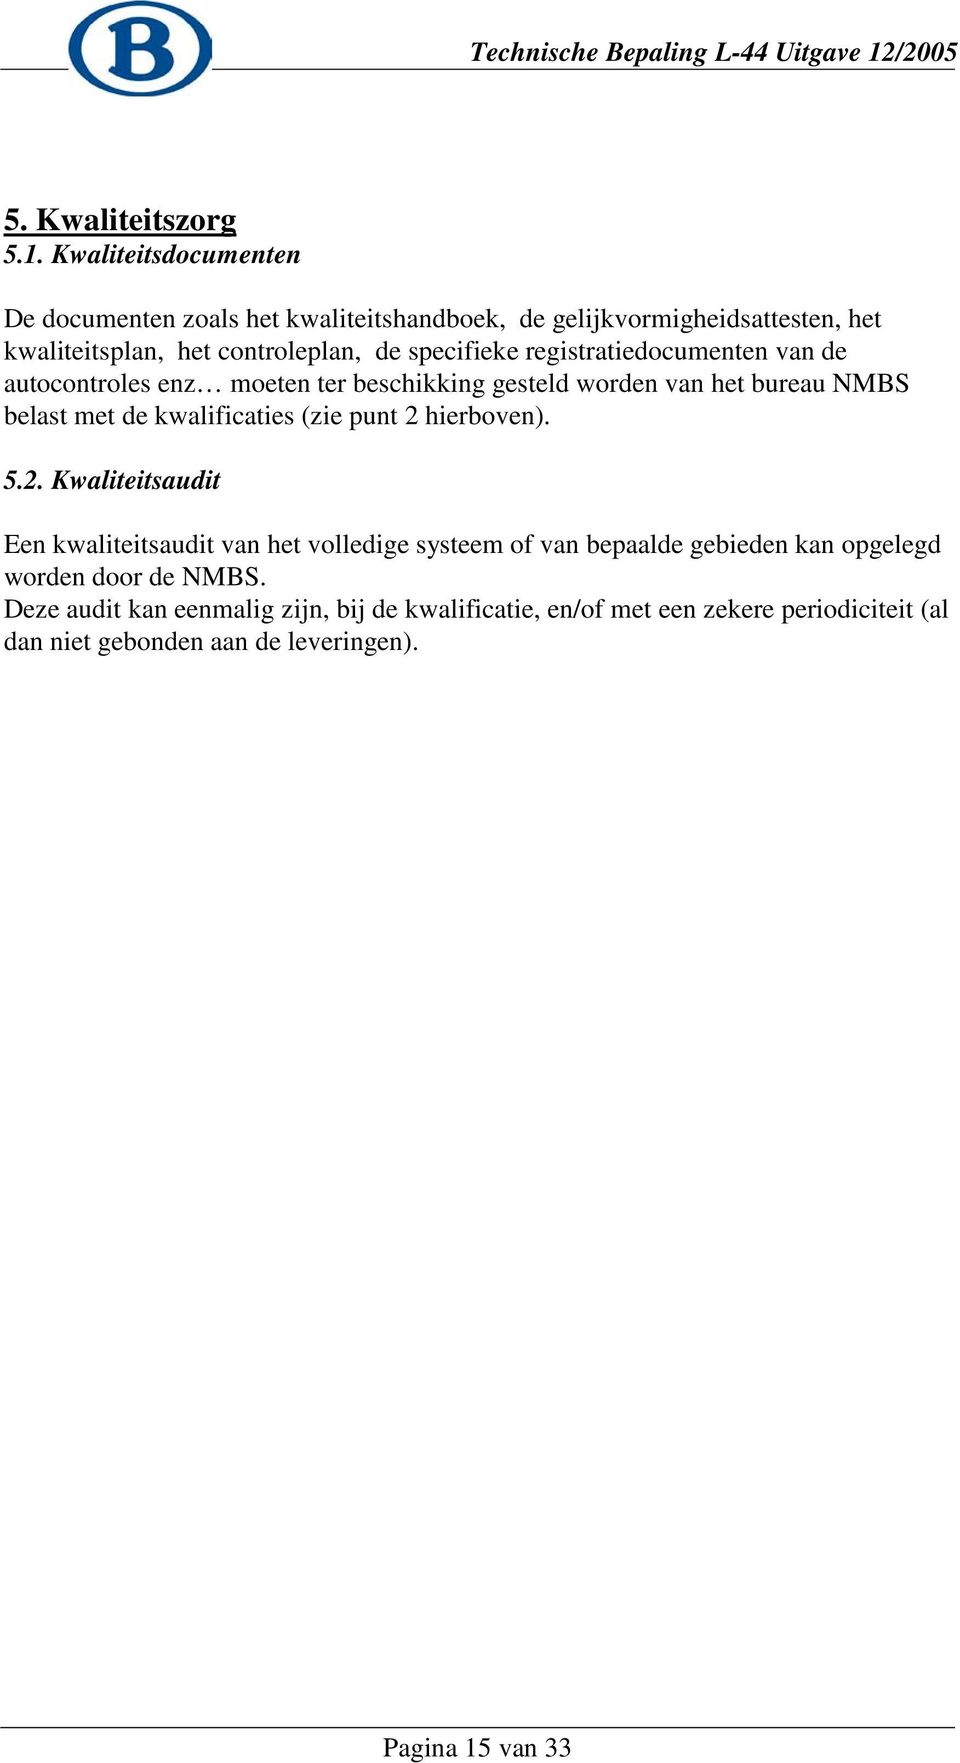 registratiedocumenten van de autocontroles enz moeten ter beschikking gesteld worden van het bureau NMBS belast met de kwalificaties (zie punt 2